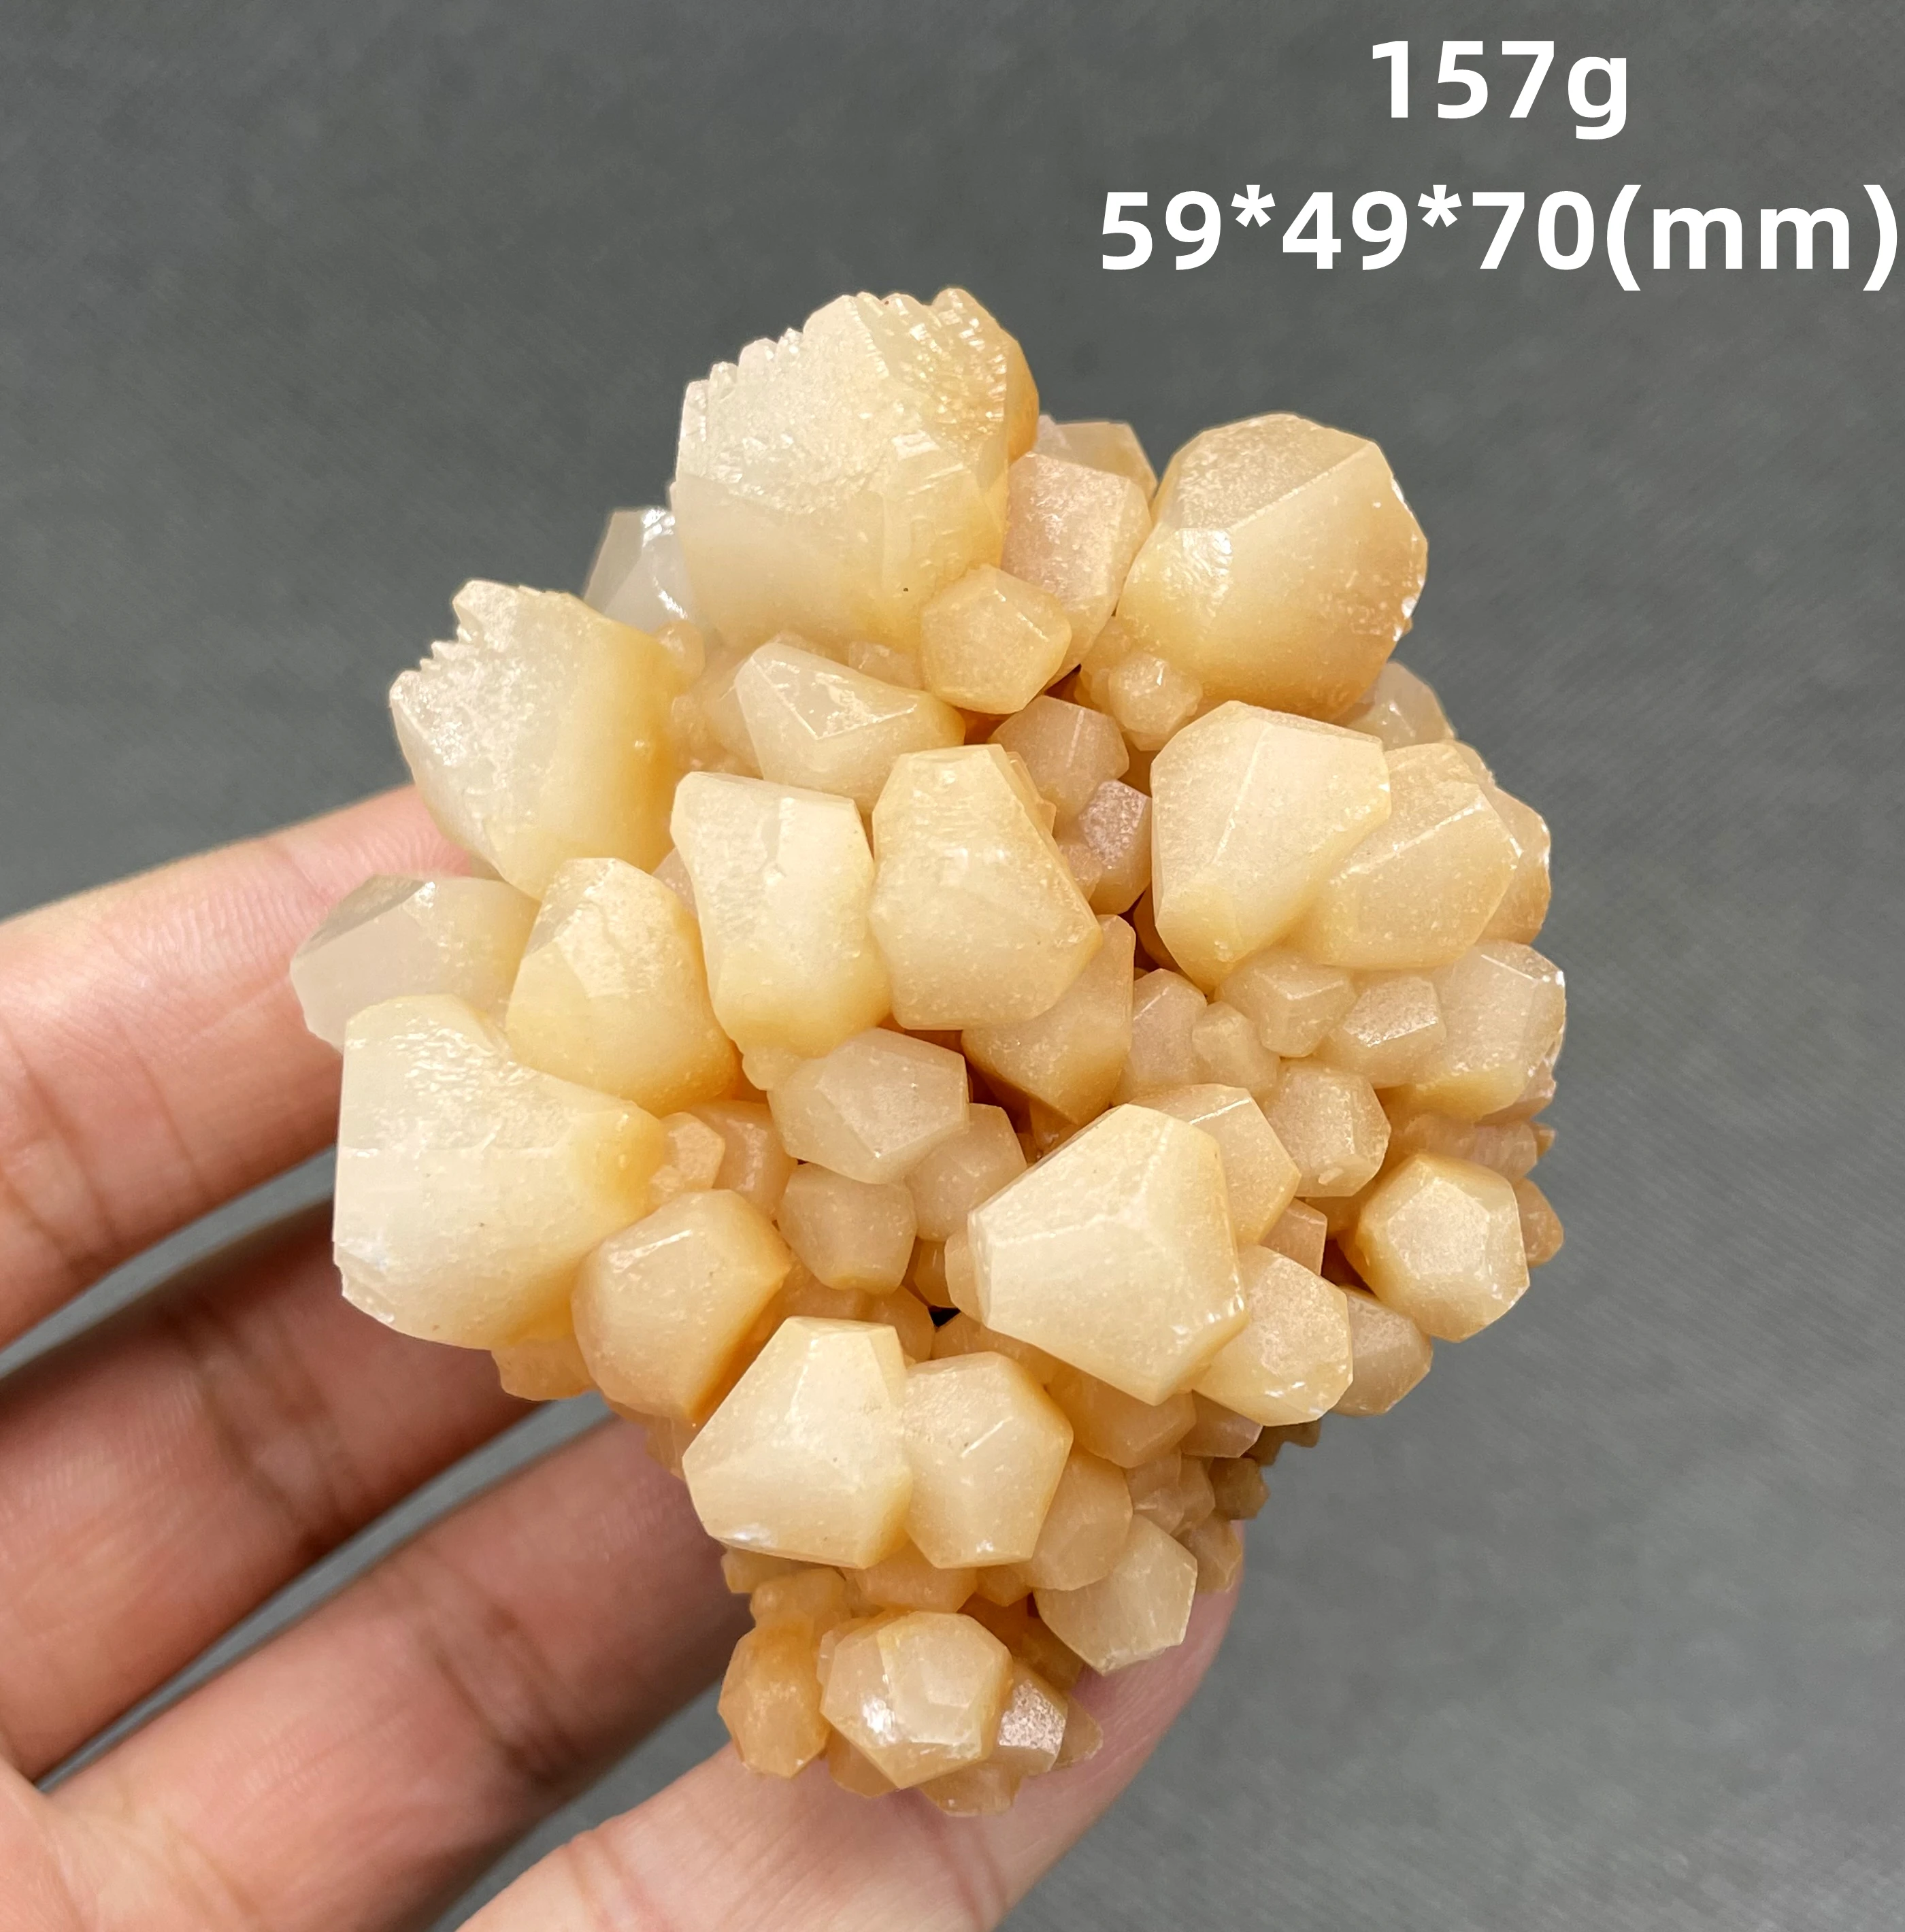 

BIG! 100% natural polyhedron Calcite mineral specimen stones and crystals healing crystals quartz gemstones